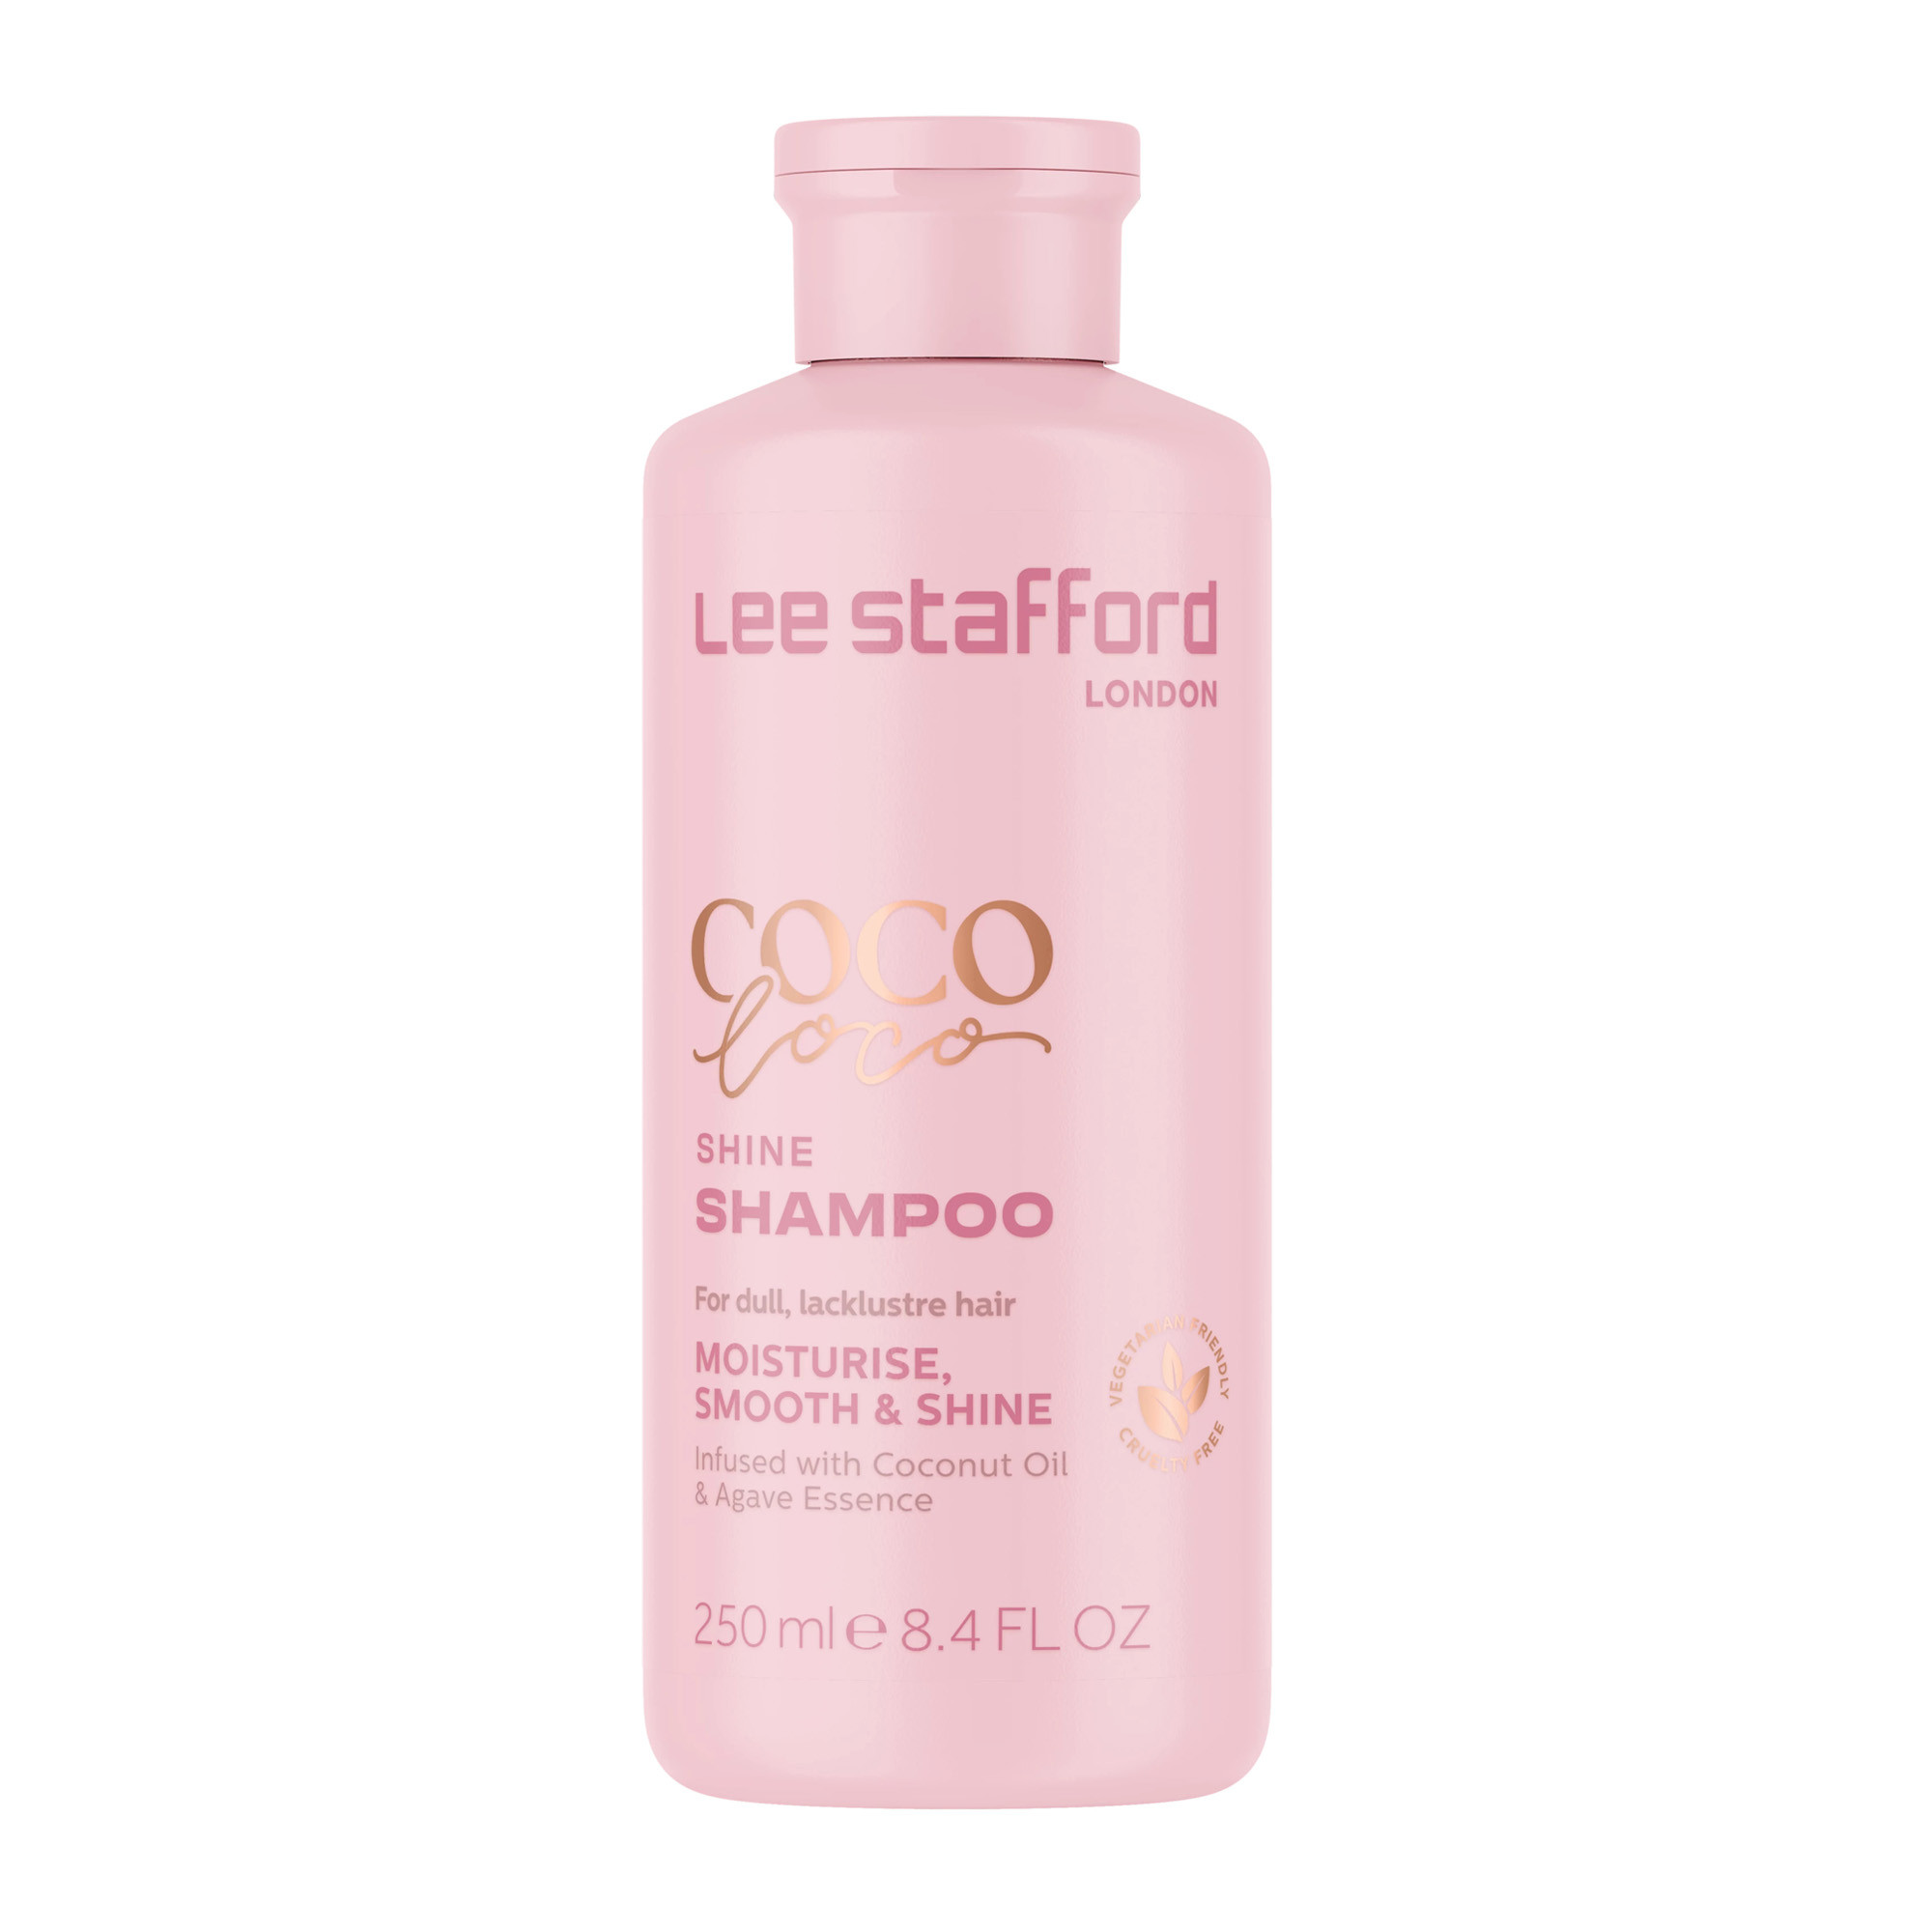 Шампунь для сияния с кокосовым маслом Lee Stafford Coco Loco Shine Shampoo